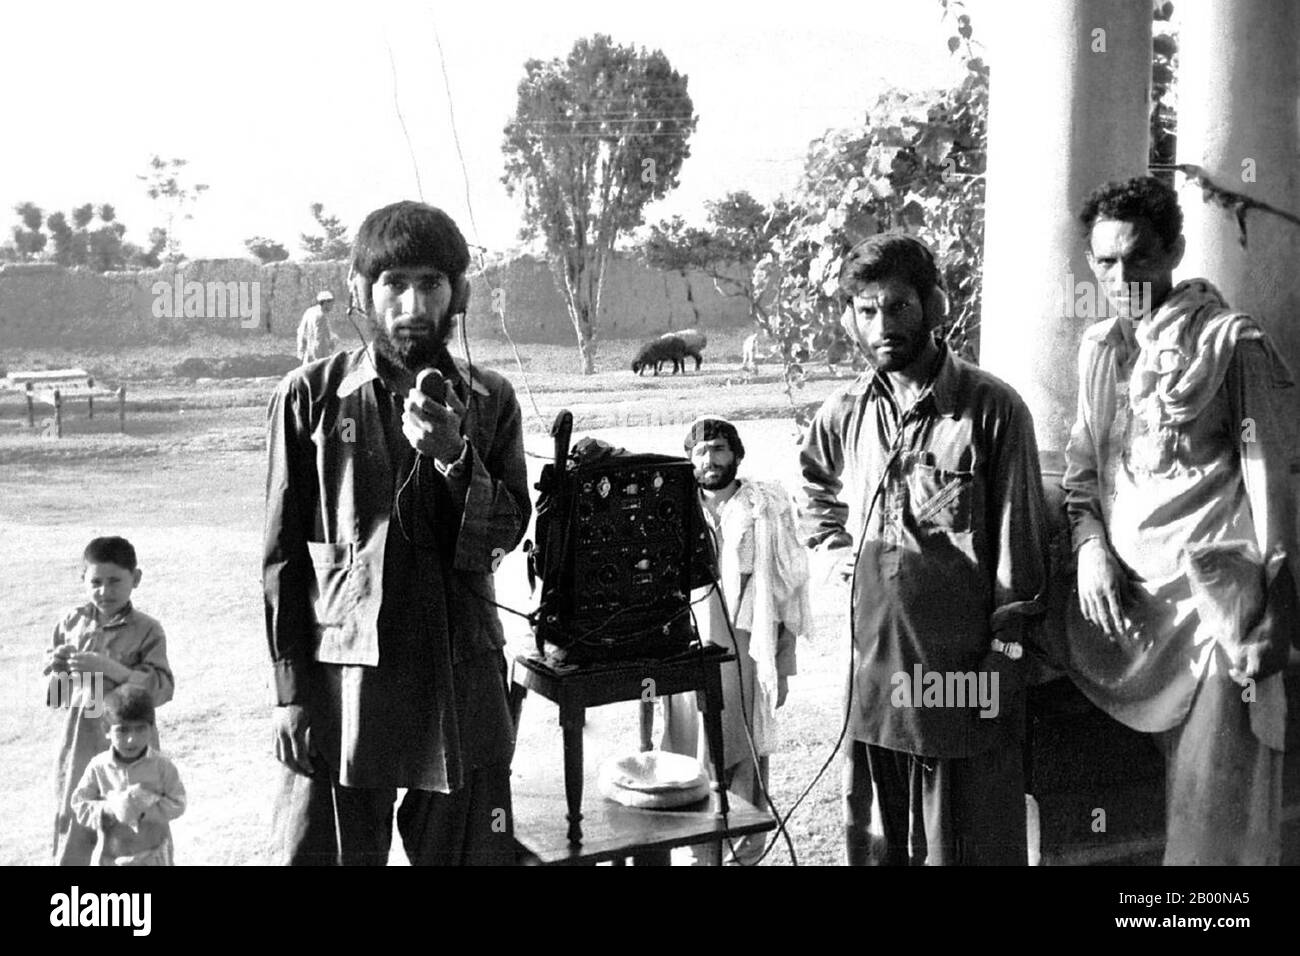 Afghanistan : unité de communication de Mujahiddin, province de Kunar, 1985. Photo par Erwin Lux (Licence CC BY-sa 3.0). La guerre soviétique en Afghanistan a été un conflit de neuf ans impliquant l'Union soviétique, soutenant le gouvernement marxiste de la République démocratique d'Afghanistan contre les moudjahidines indigènes d'Afghanistan et les volontaires étrangers « arabo-afghans ». Les moudjahidines ont trouvé d'autres sources d'appui, notamment les États-Unis, l'Arabie saoudite, le Royaume-Uni, le Pakistan, l'Égypte, la Chine et d'autres nations. La guerre afghane est devenue une guerre par procuration dans le contexte plus large de la fin de la guerre froide. Banque D'Images